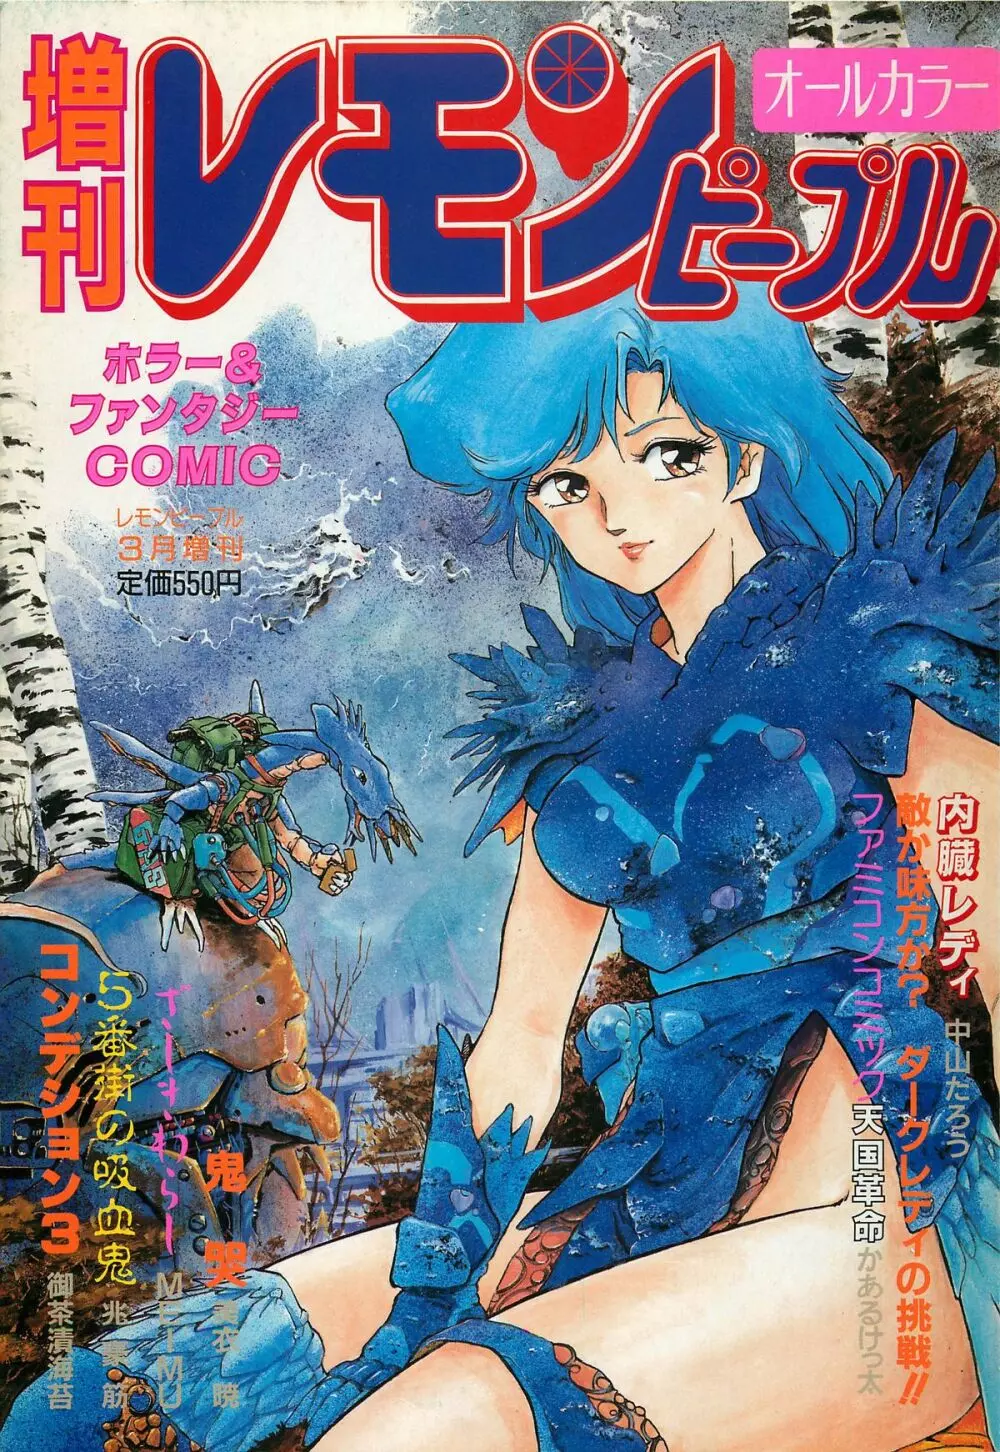 レモンピープル 1987年3月増刊号 Vol.70 オールカラー